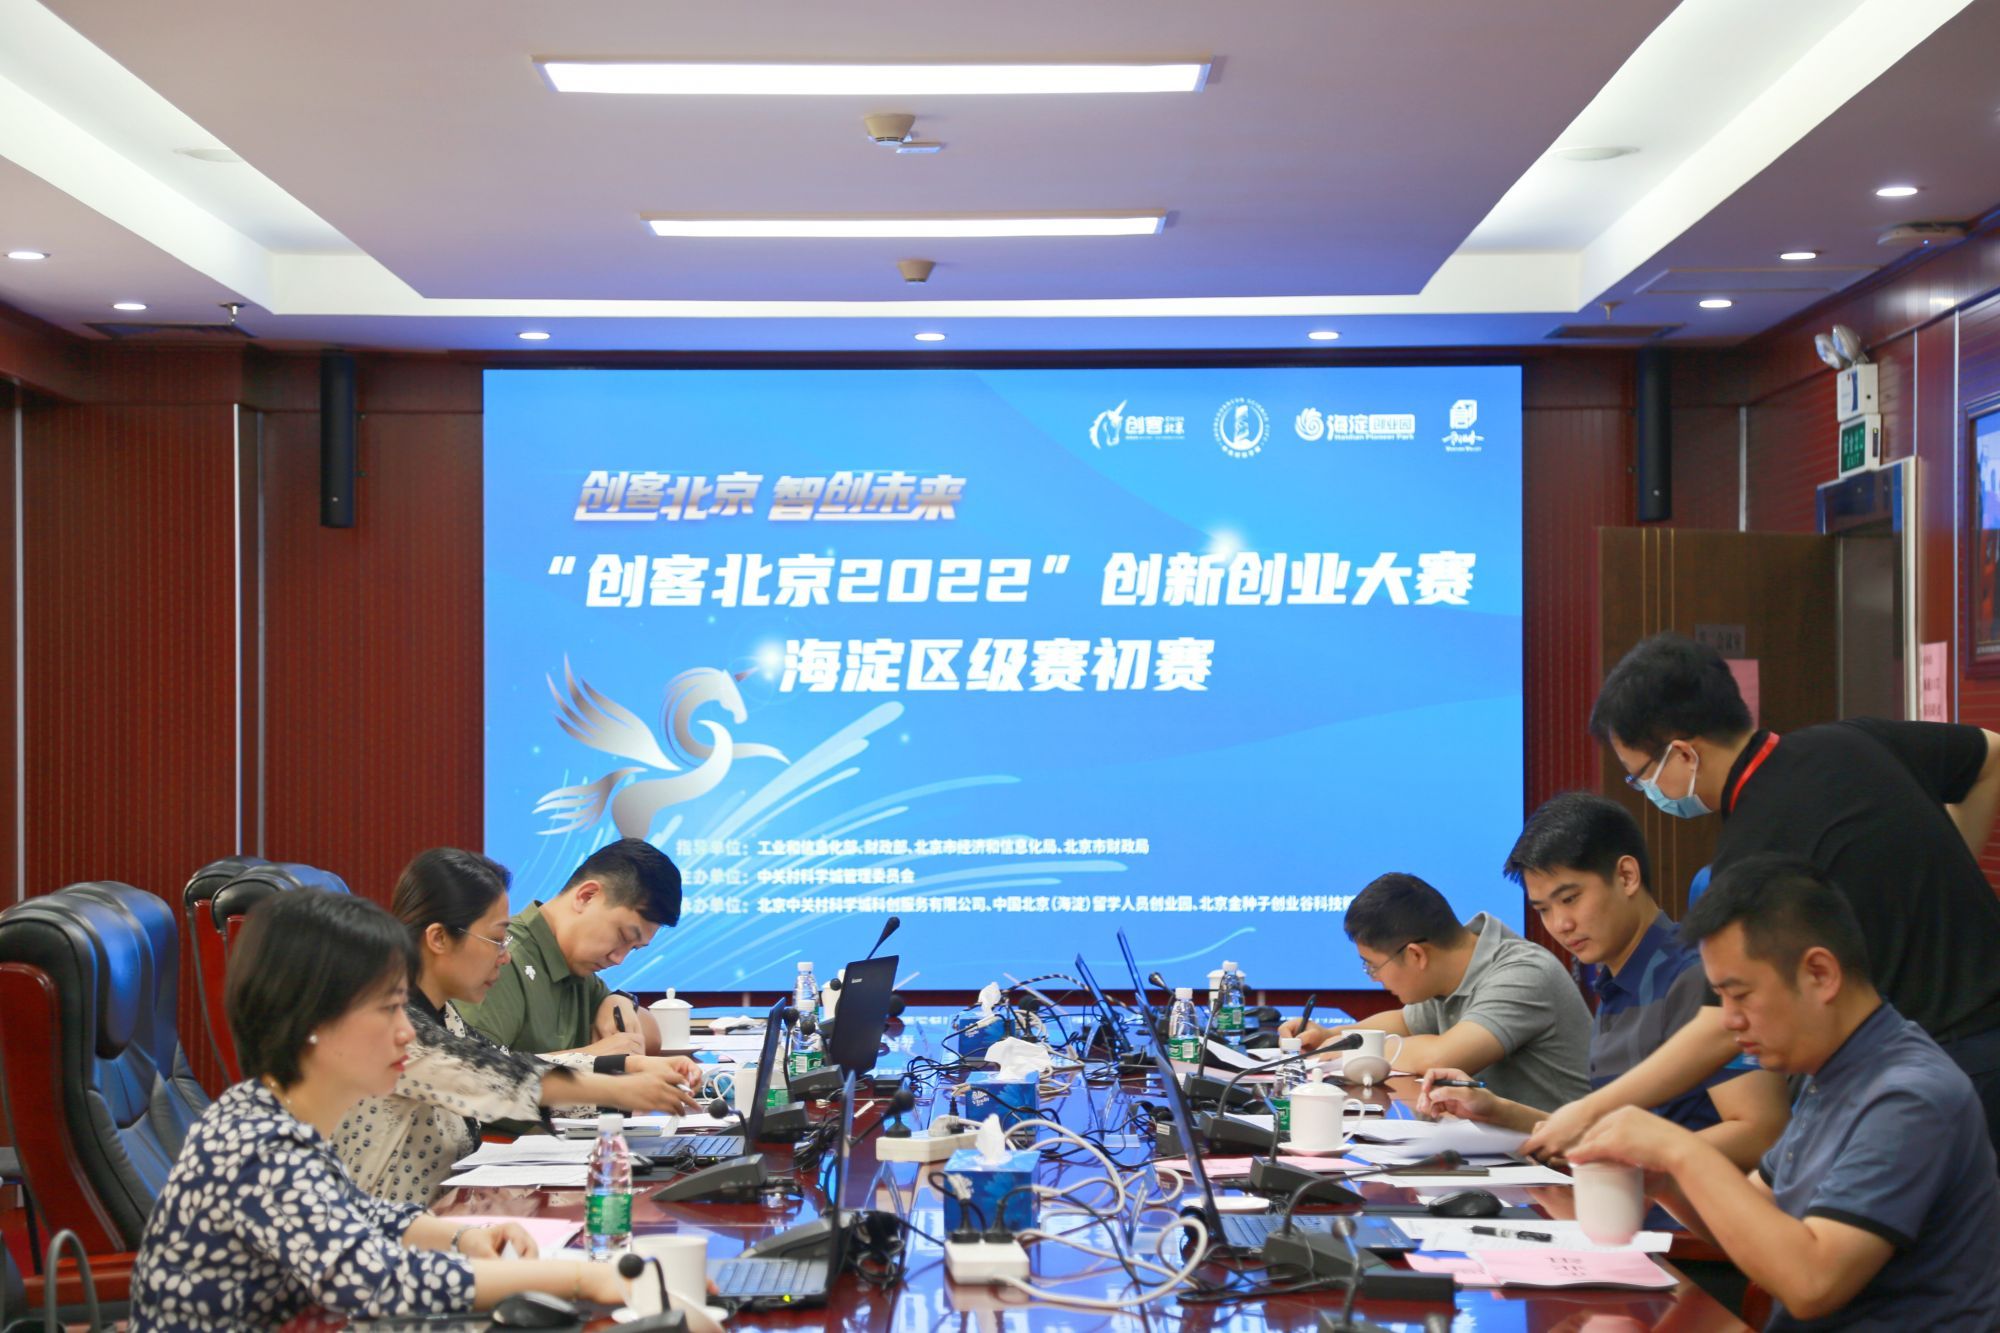 “创客北京2022”创新创业大赛海淀区级赛初赛评审在北京海淀创业园举办